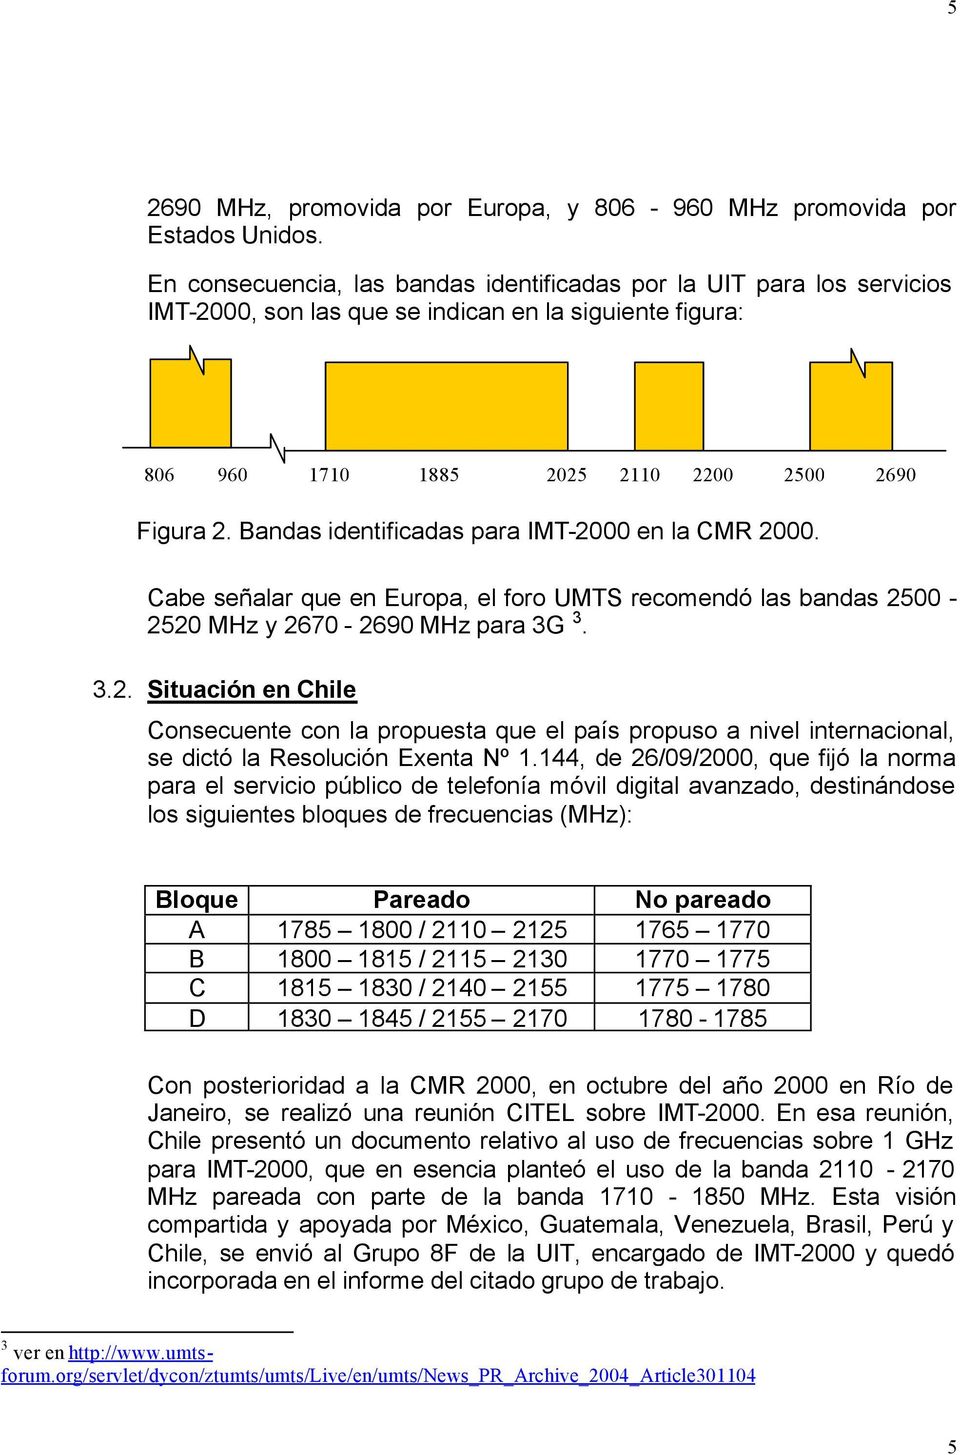 Bandas identificadas para IMT-2000 en la CMR 2000. Cabe señalar que en Europa, el foro UMTS recomendó las bandas 2500-2520 MHz y 2670-2690 MHz para 3G 3. 3.2. Situación en Chile Consecuente con la propuesta que el país propuso a nivel internacional, se dictó la Resolución Exenta Nº 1.